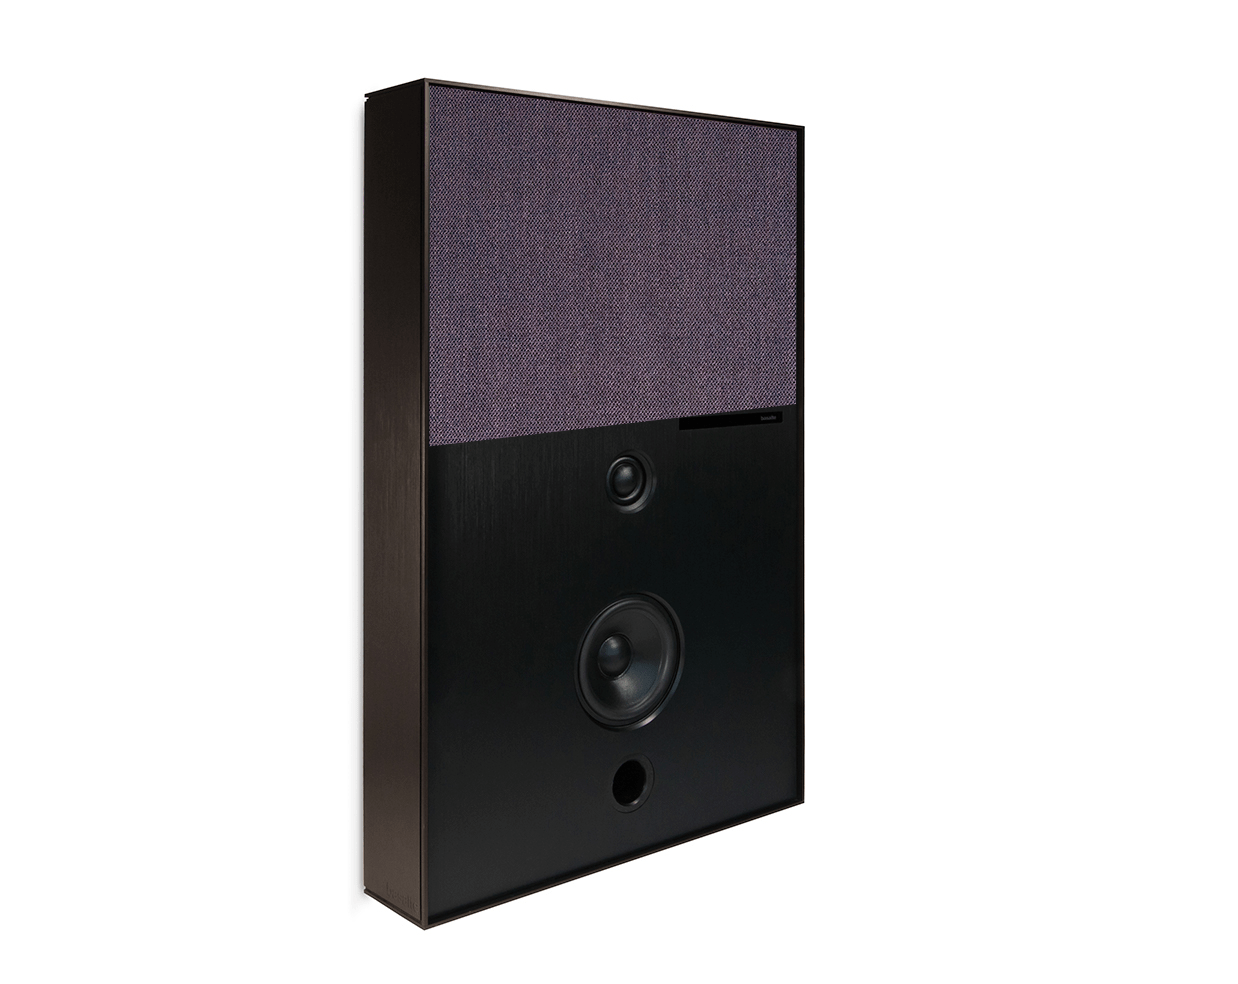 bronze and purple aalto d3 active speaker